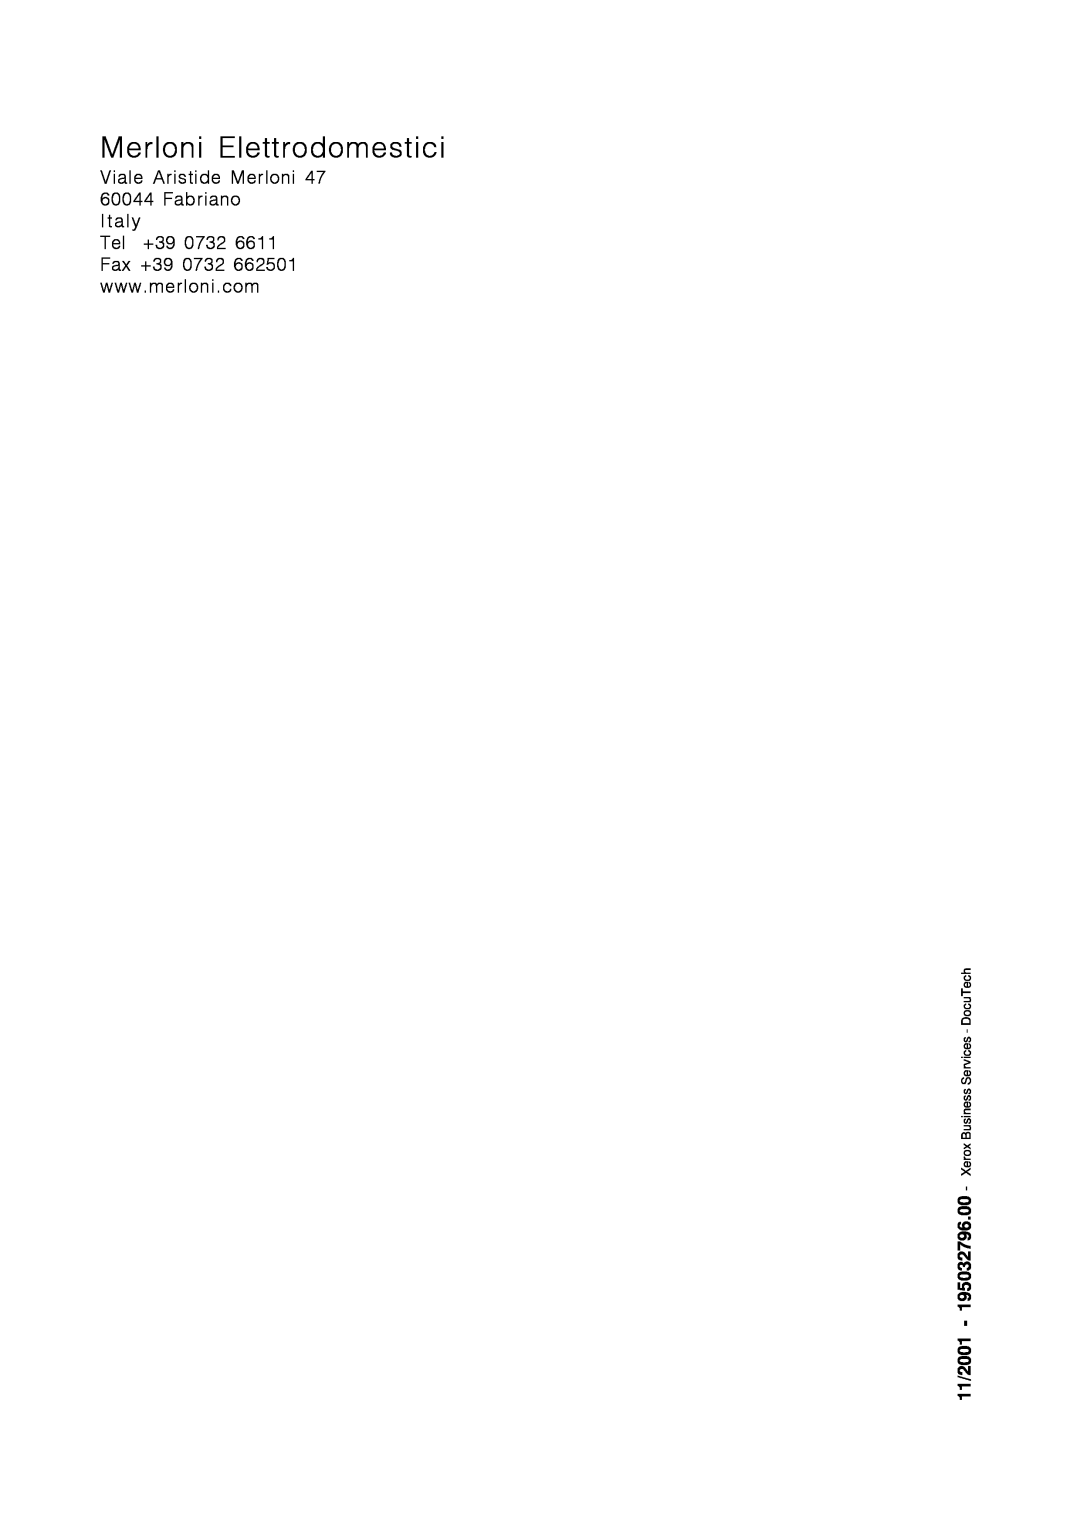 Indesit DI 67 manual Merloni Elettrodomestici, 11/2001, Xerox Business Services - DocuTech 